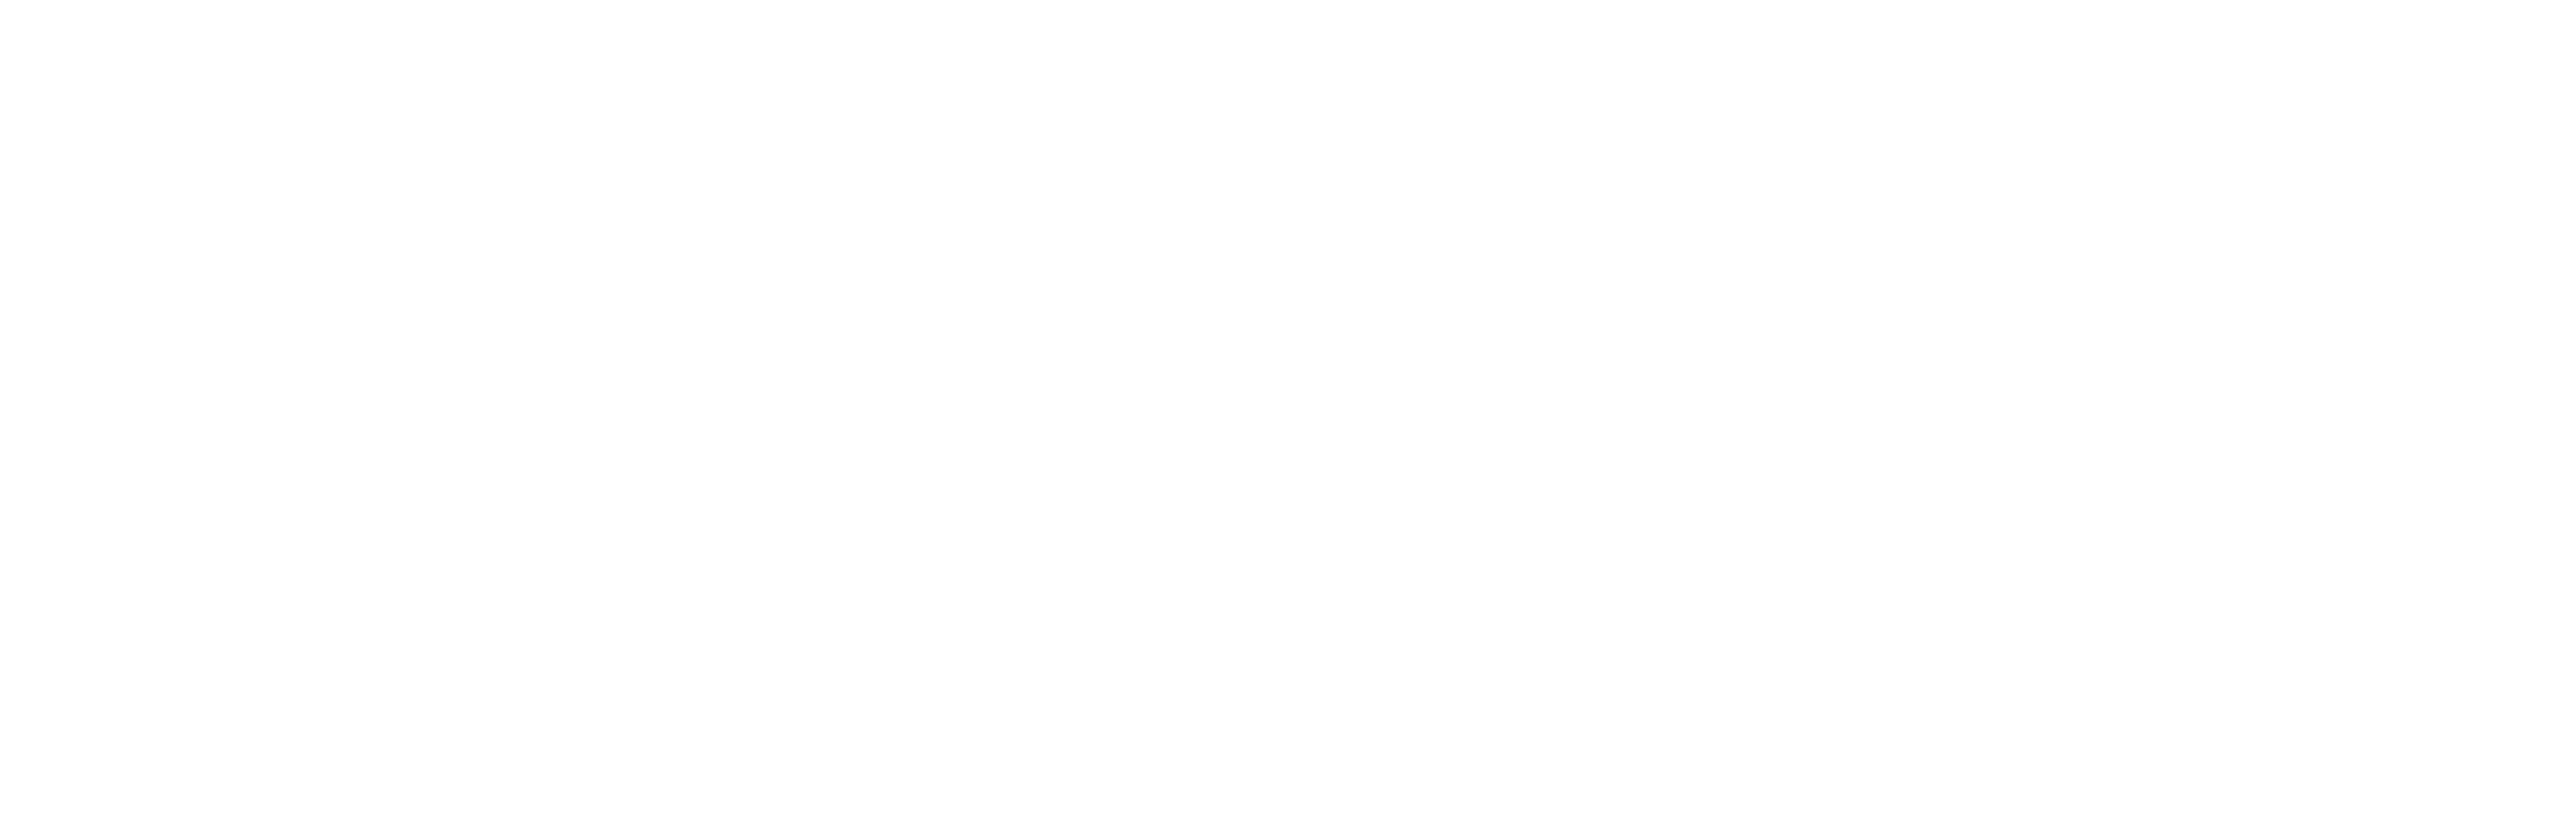 nl dentistry logo white